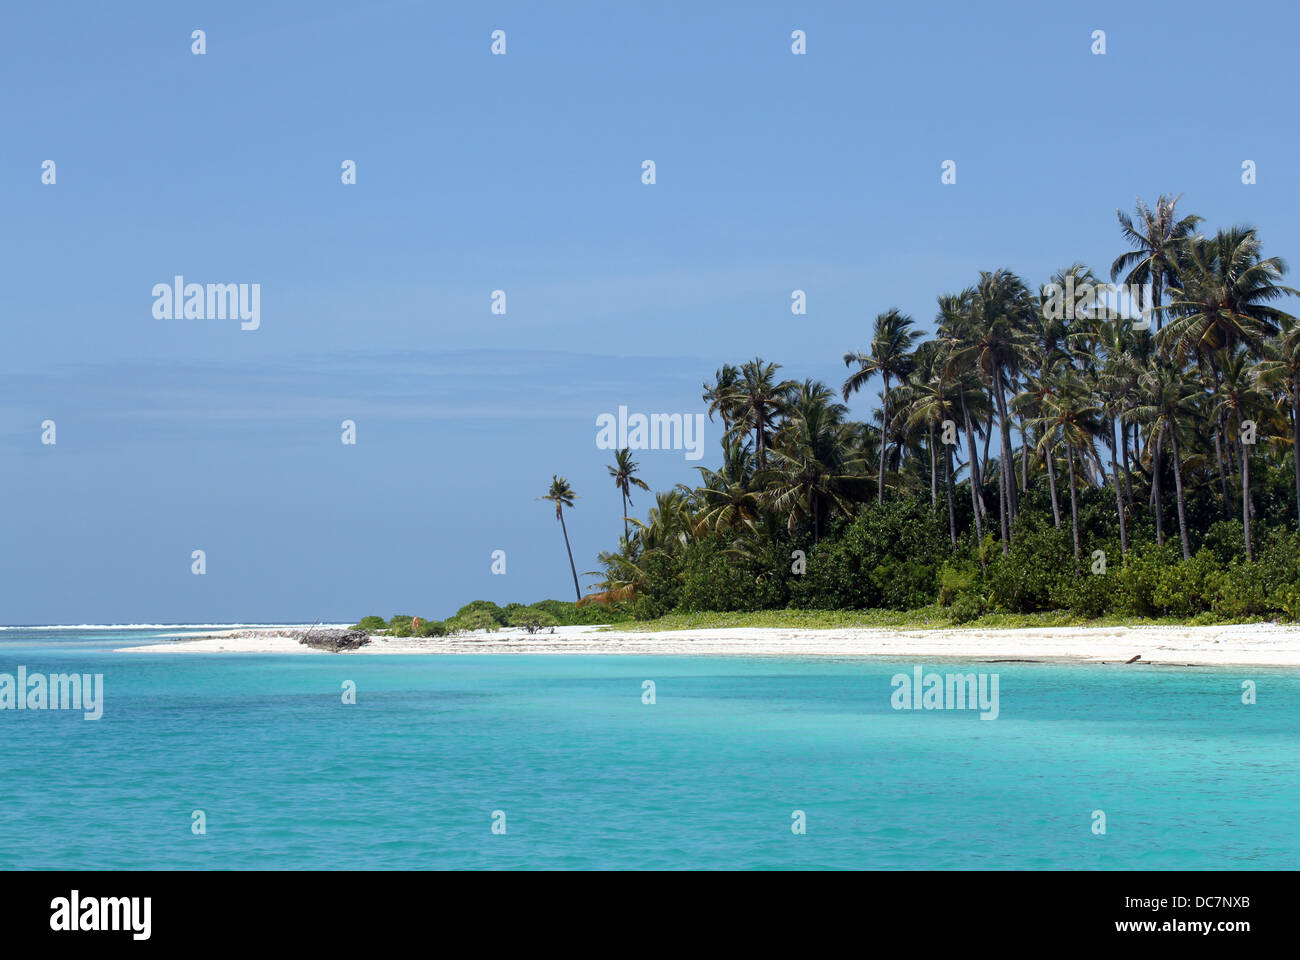 Plage de sable blanc et de cocotiers, l'Île Olhuveli, South Male Atoll, Maldives Banque D'Images